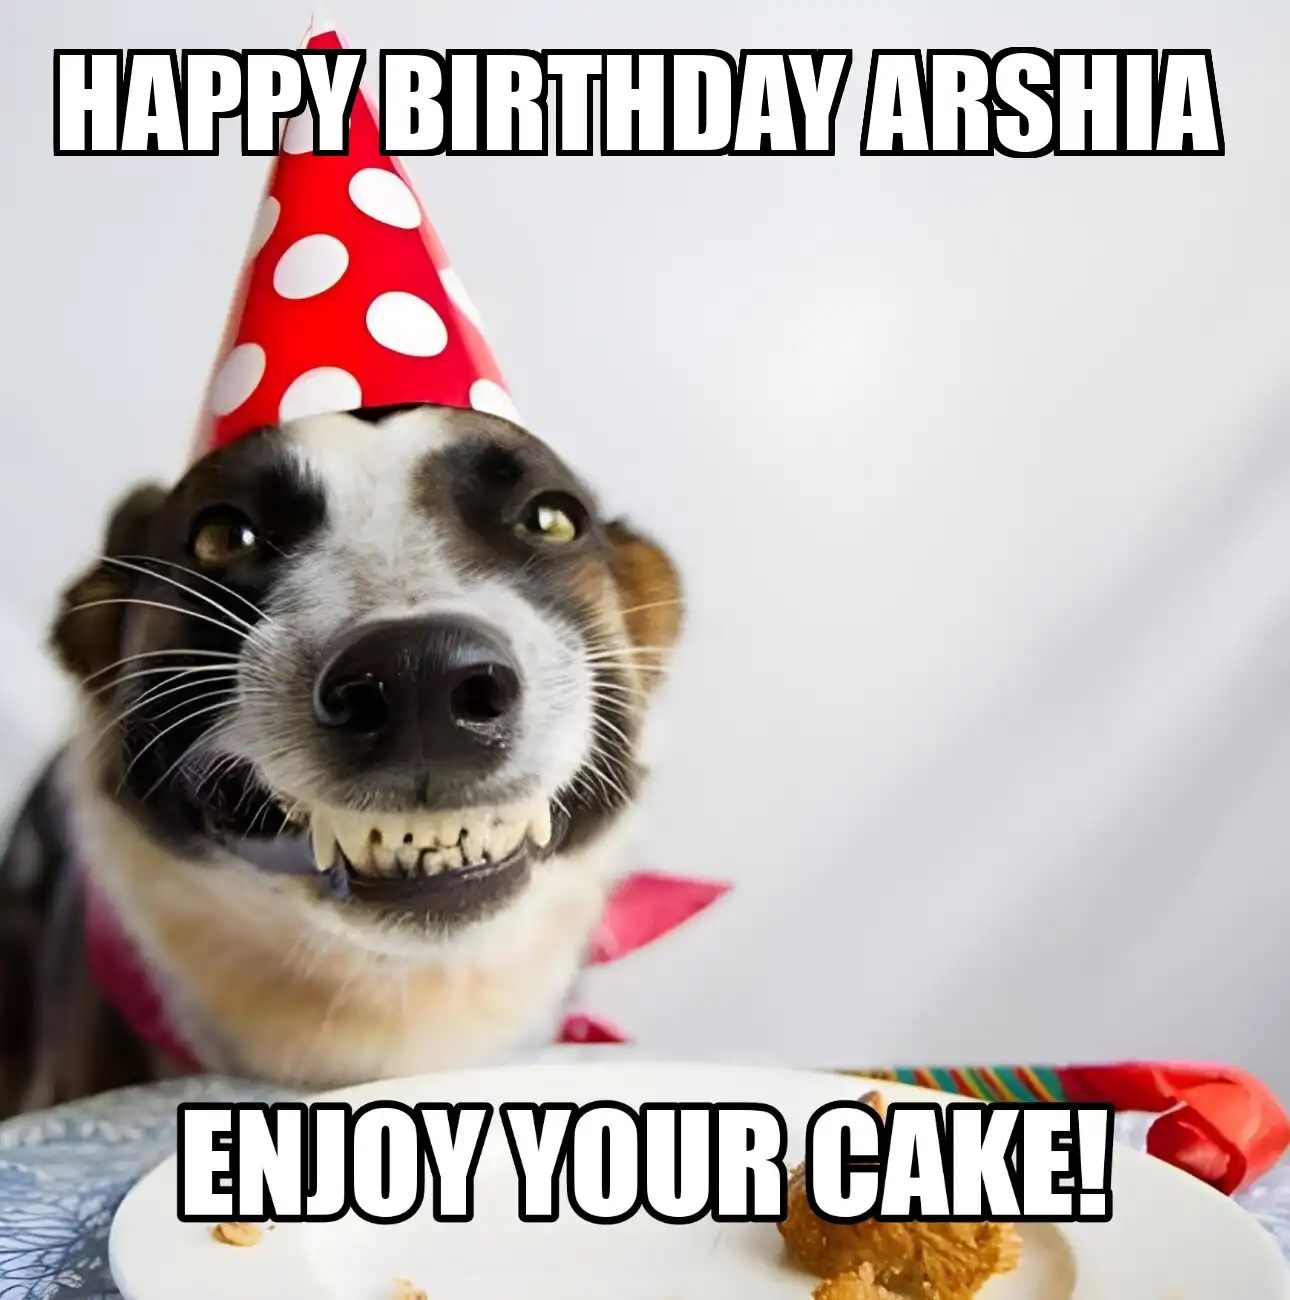 Happy Birthday Arshia Enjoy Your Cake Dog Meme